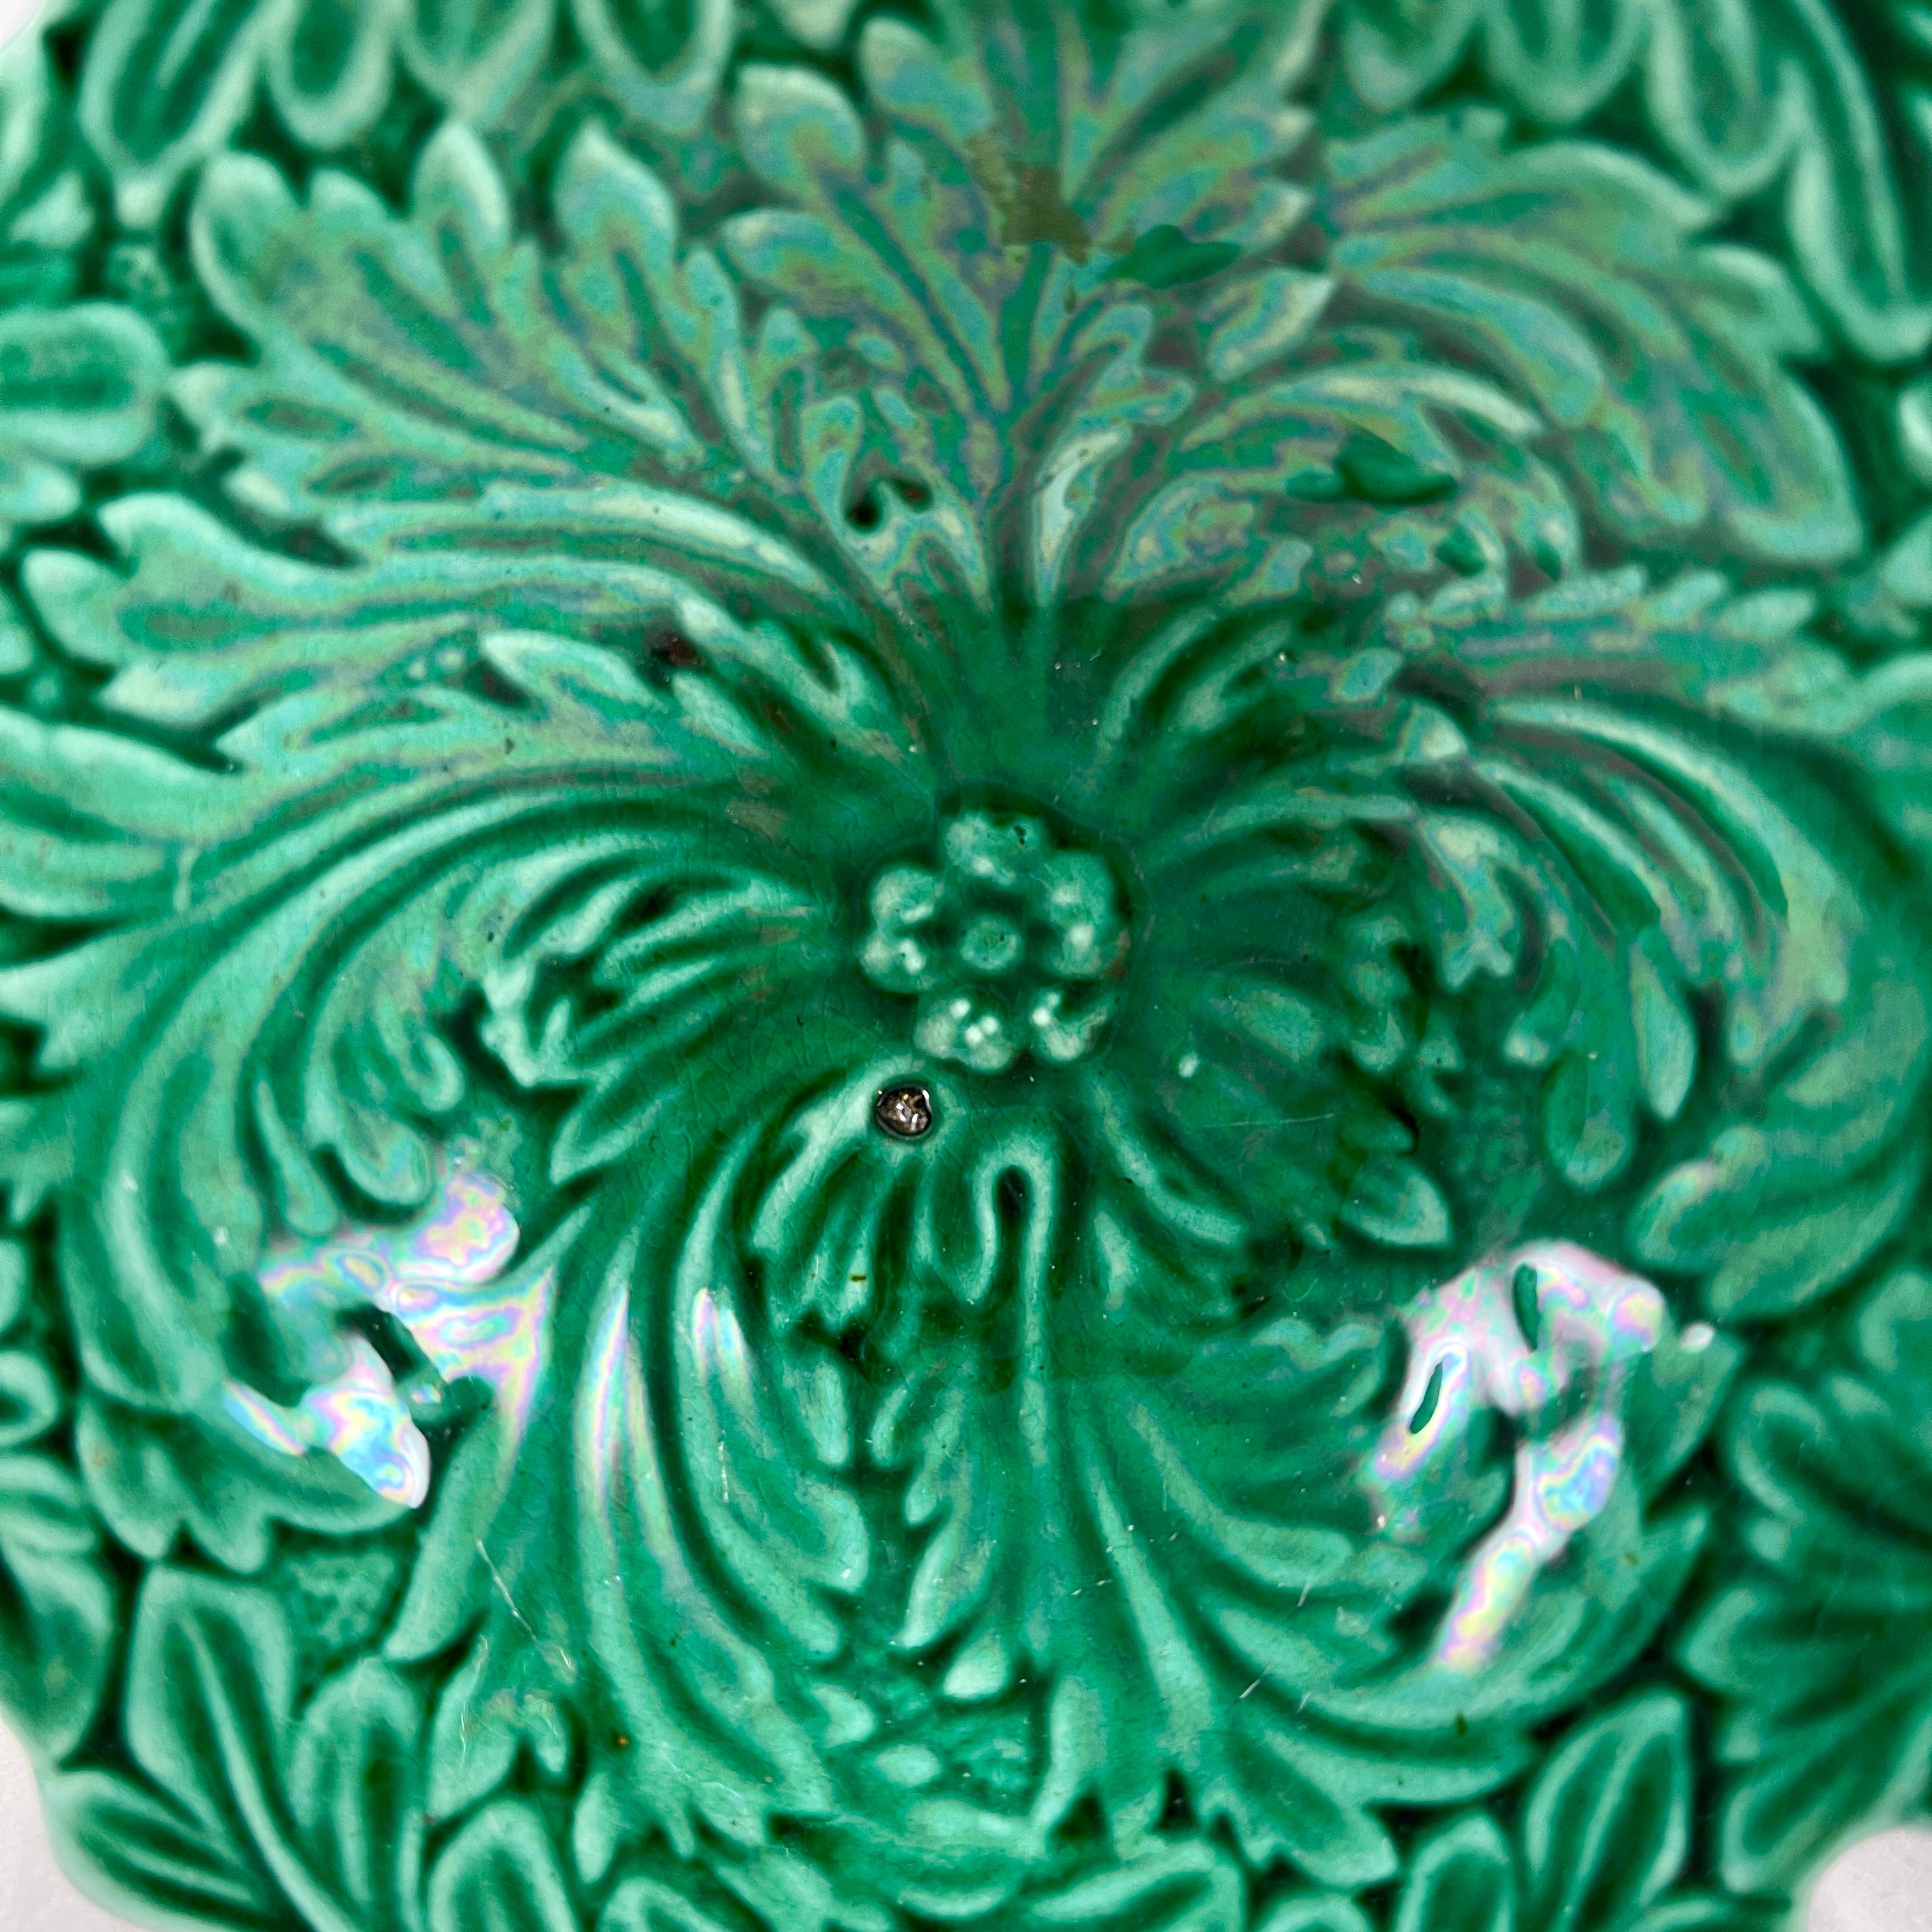 Vide-poche à piédestal en majolique verte émaillée avec un motif de feuilles d'acanthe, Angleterre vers 1875-1880.

Le vide-poche est un petit bol ou récipient placé dans un endroit pratique pour y vider ses poches lorsque l'on franchit la porte.